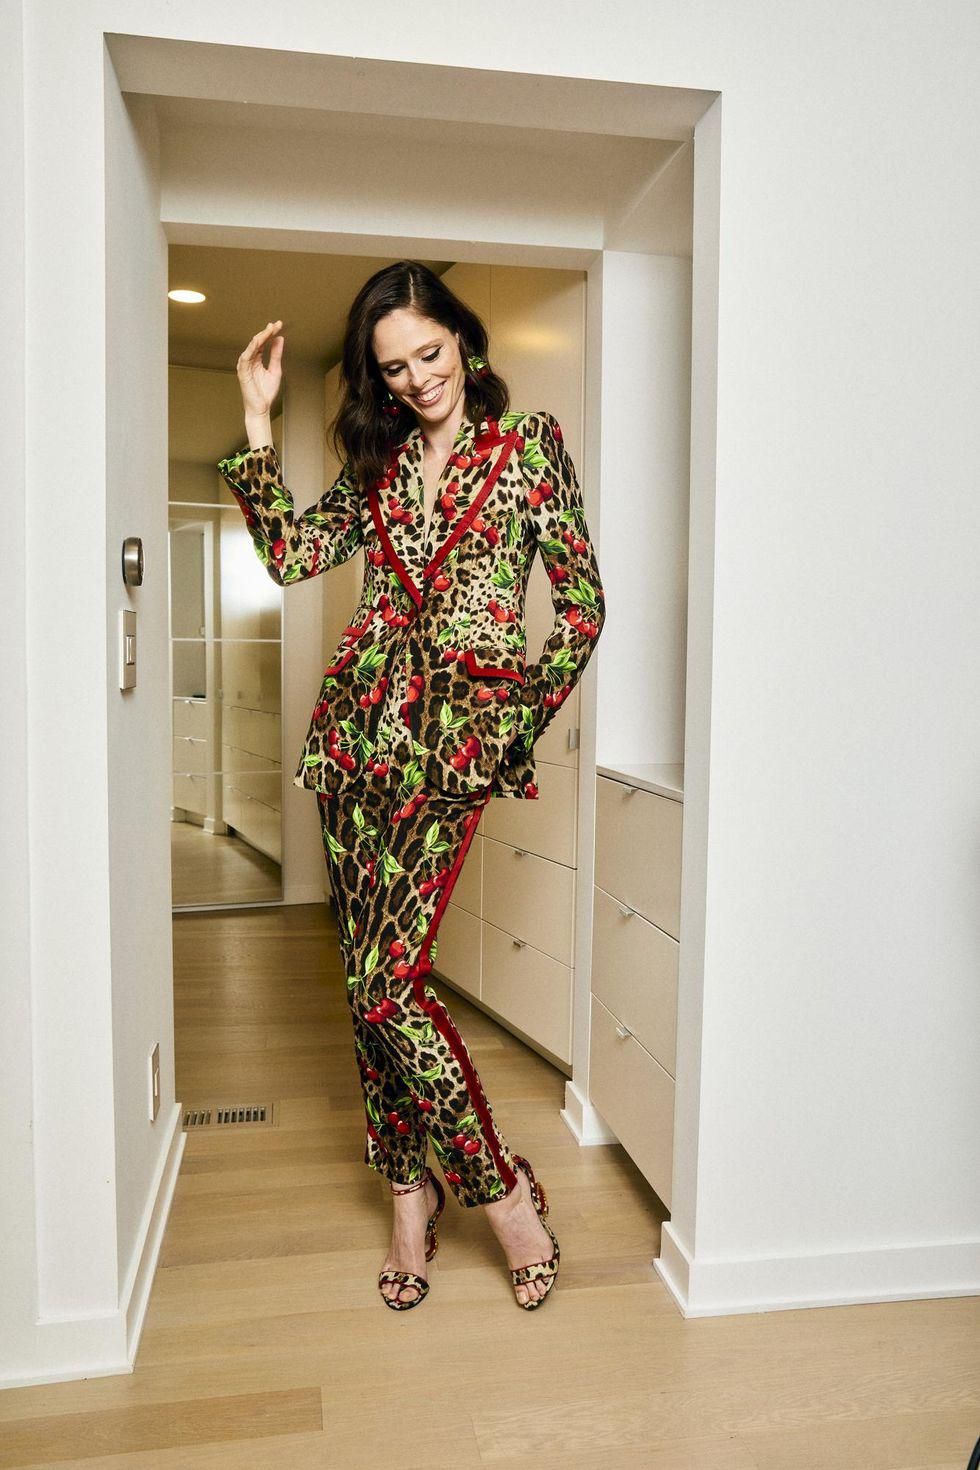 Olivia Von Halle Silk Coco Pyjama Set - Pink - Xs